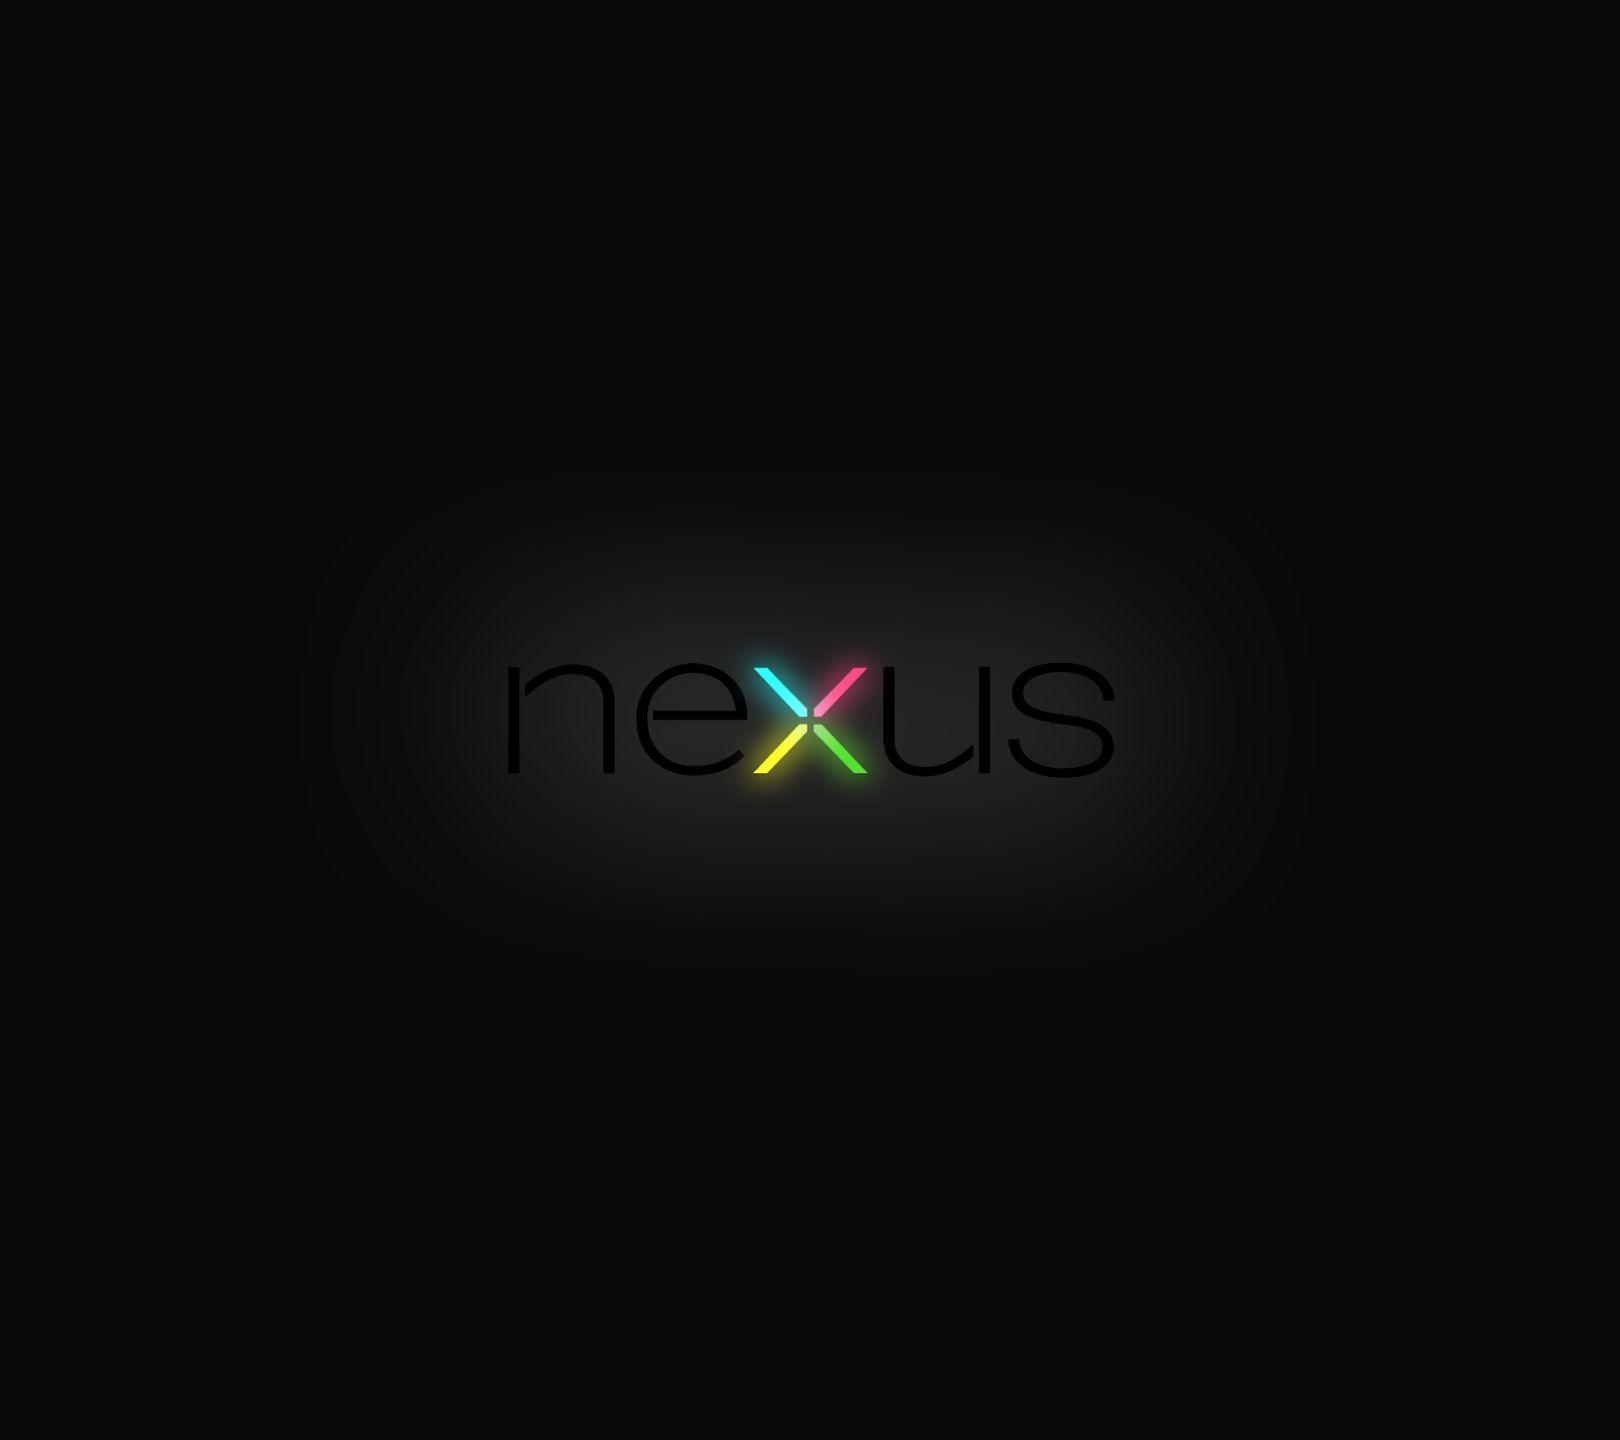 Desktop Nexus Background, wallpaper, Desktop Nexus Background HD